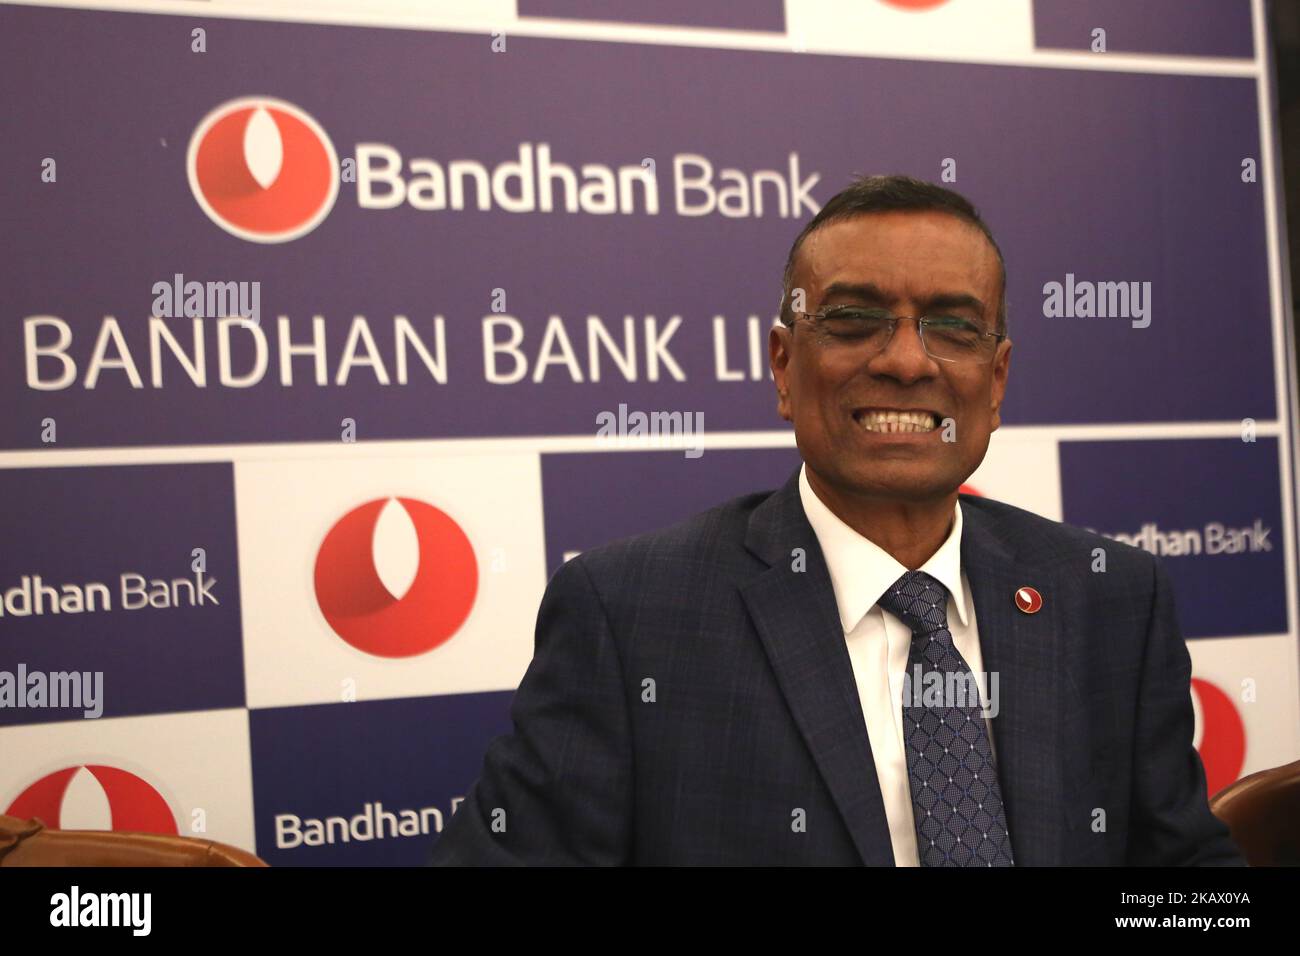 Chandra Shekhar Ghosh, MD & CEO der Bandhan Bank beim Börsengang der Bandhan Bank am 9. März 2018 in Kalkutta, Indien. Bandhan Bank Ltd, die neueste unter den privaten Kreditgebern, sagte heute, dass sie am 15. März 2018 einen Börsengang (Börsengang) von 4.473 Rs Crore starten wird. Die Ausgabe endet am 19. März. Die in Kalkutta ansässige Bank, Die 2015 von einem Mikrofinanzinstitut in eine Bank umgewandelt wurde, wird 2001 laut einer Erklärung der Bank im Rahmen des Börsengangs bis zu 119,3 Millionen Aktien in einer Preisklasse von je 370-375 Rs verkaufen.Kotak Mahindra Capital, Axis Capital, Goldman Sachs, JM Financial und Stockfoto